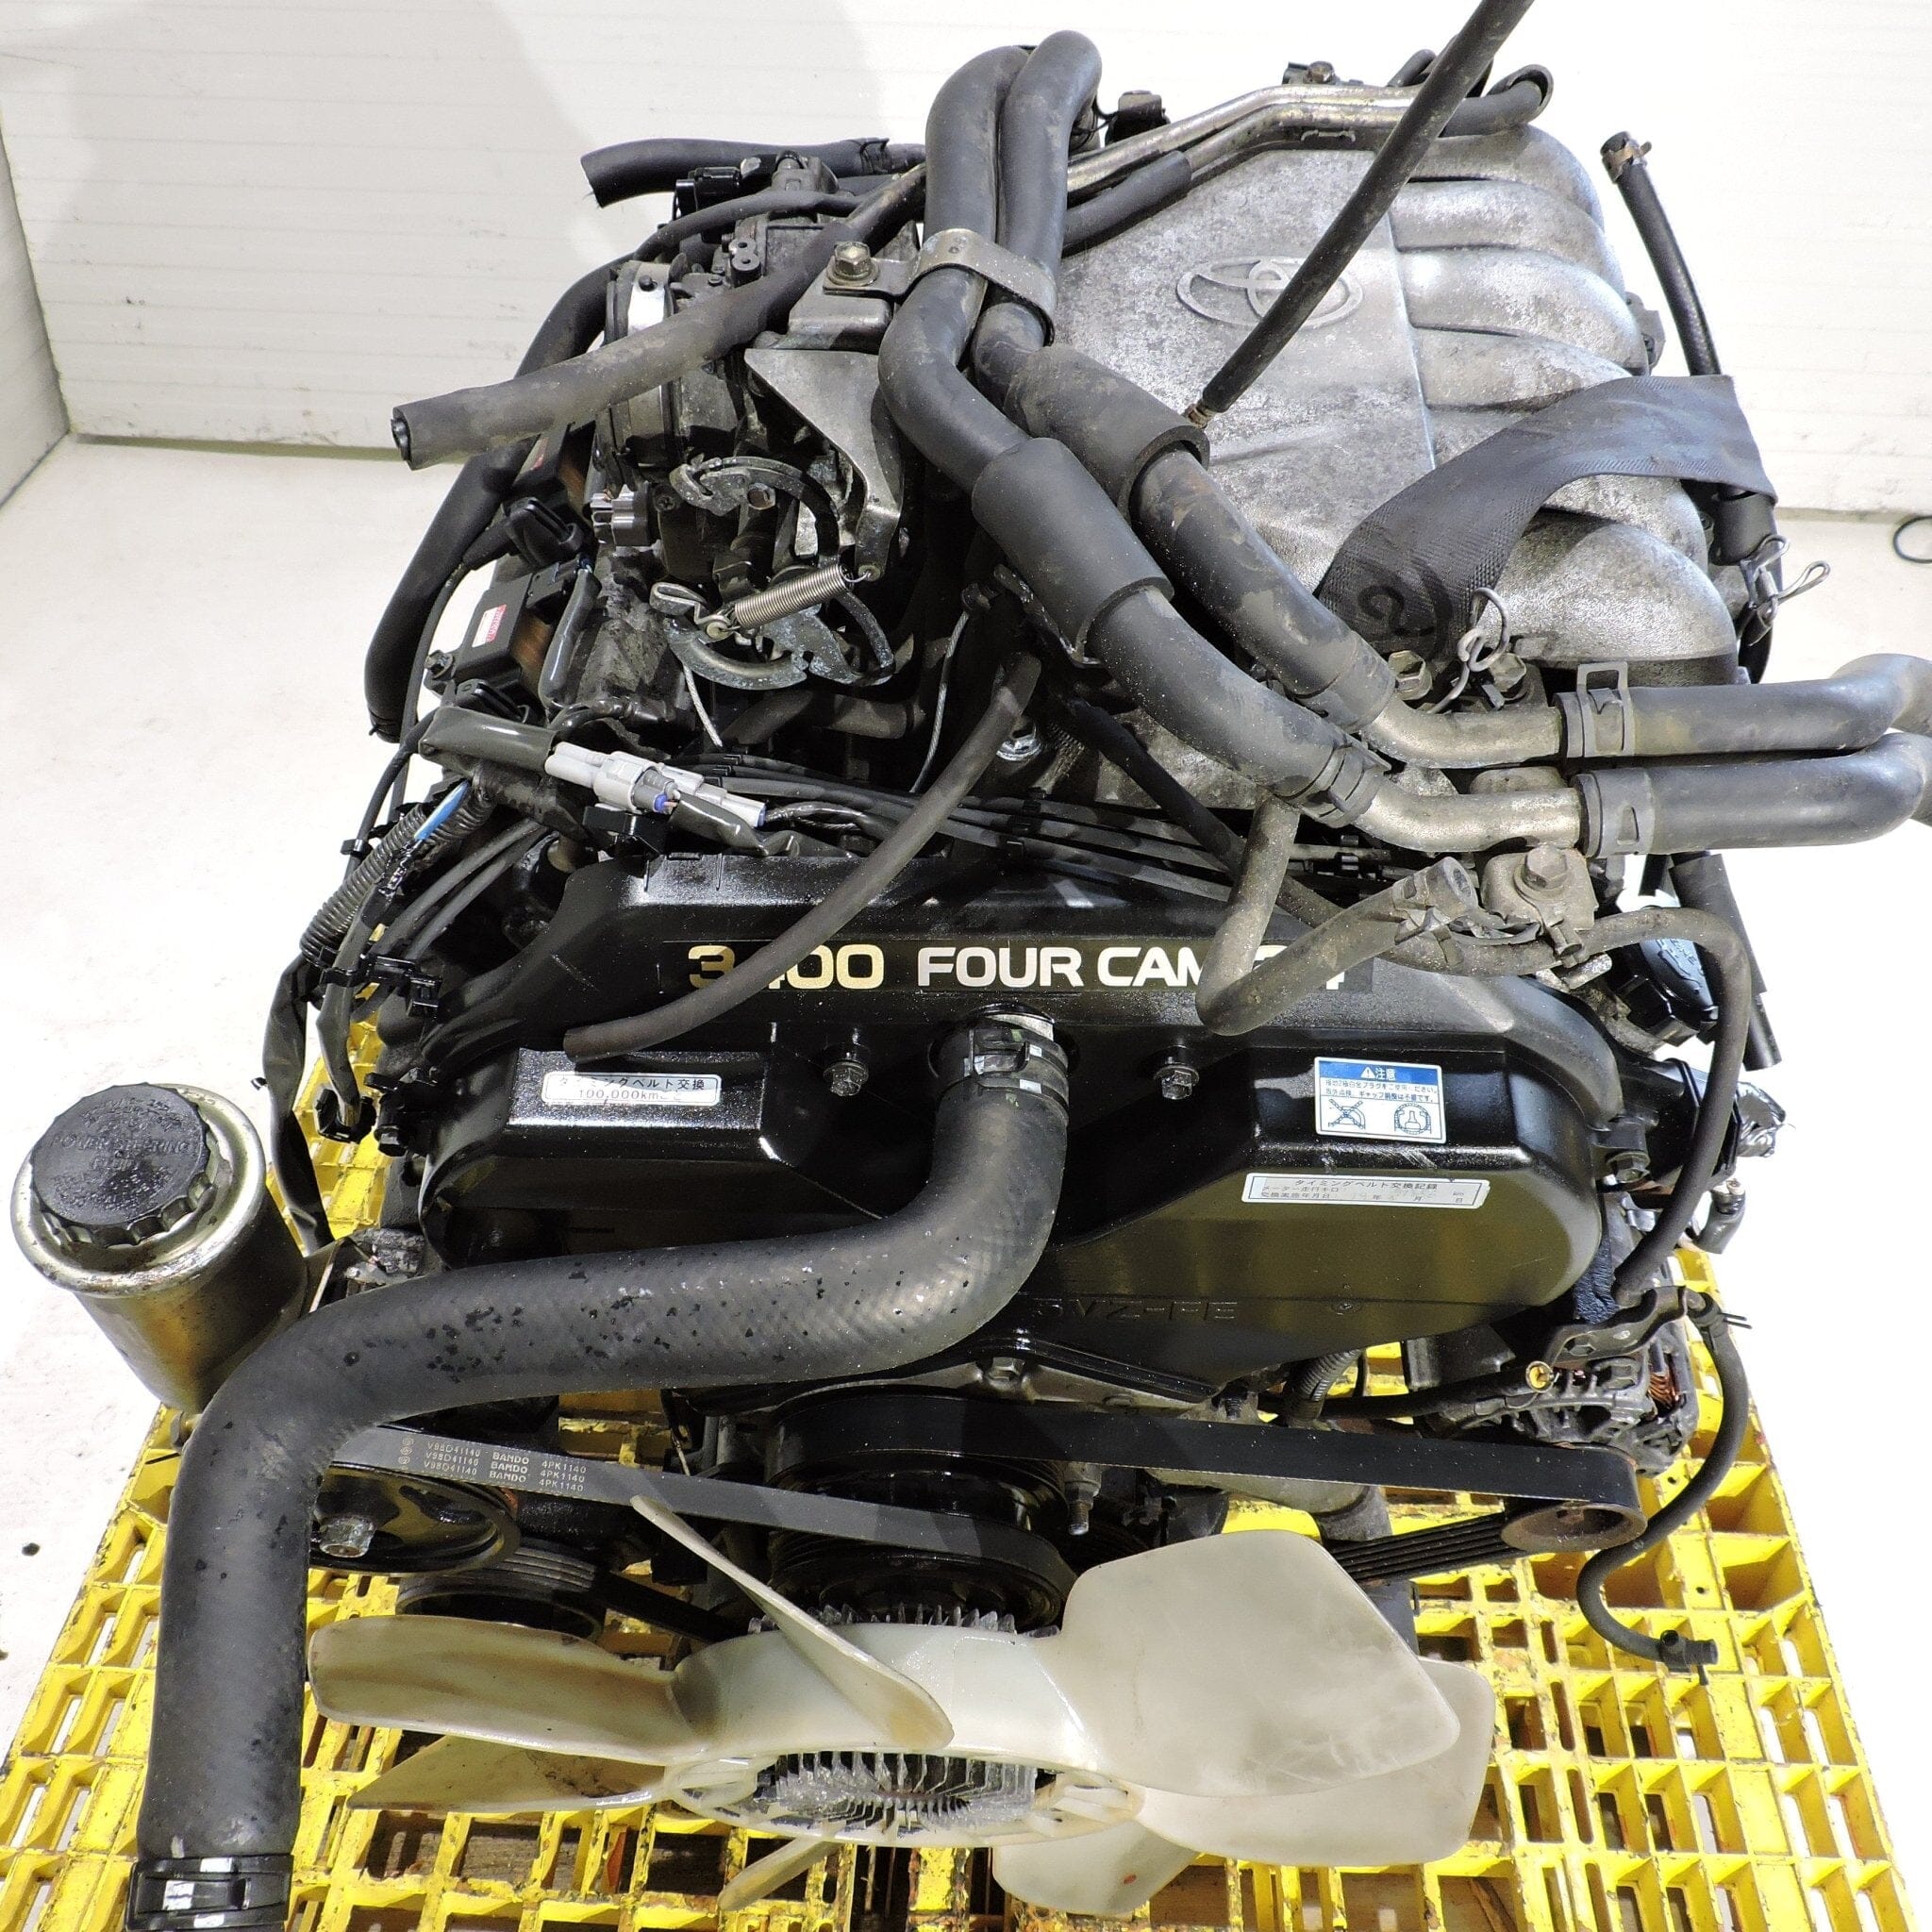 Toyota Tacoma 1996-2004 3.4L JDM Engine - 5vz Fe 6-Cylinder